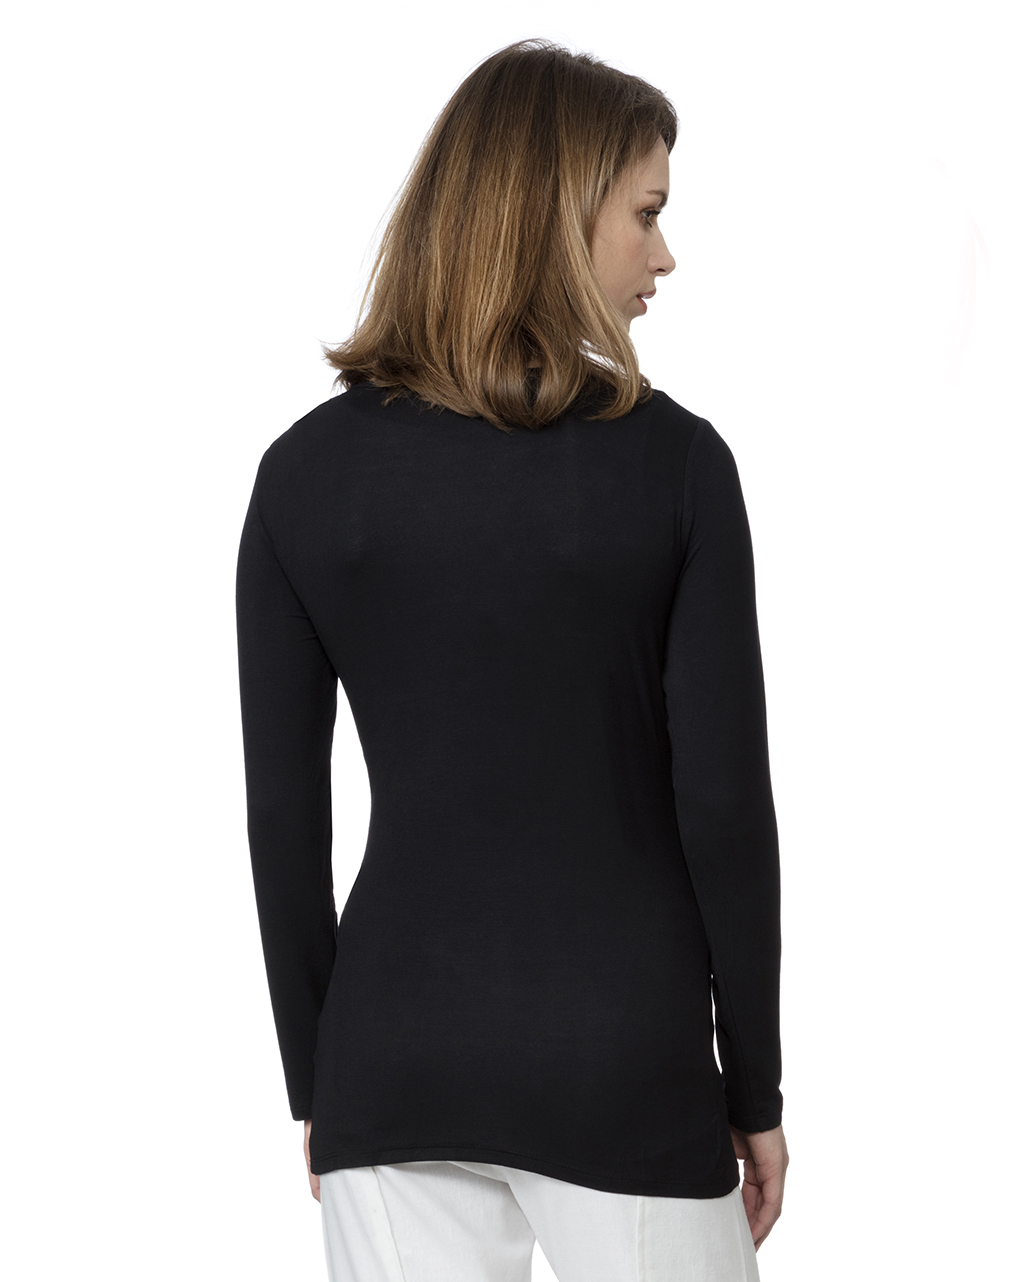 γυναικεία μπλούζα θηλασμού μαύρη 597030 - Prénatal